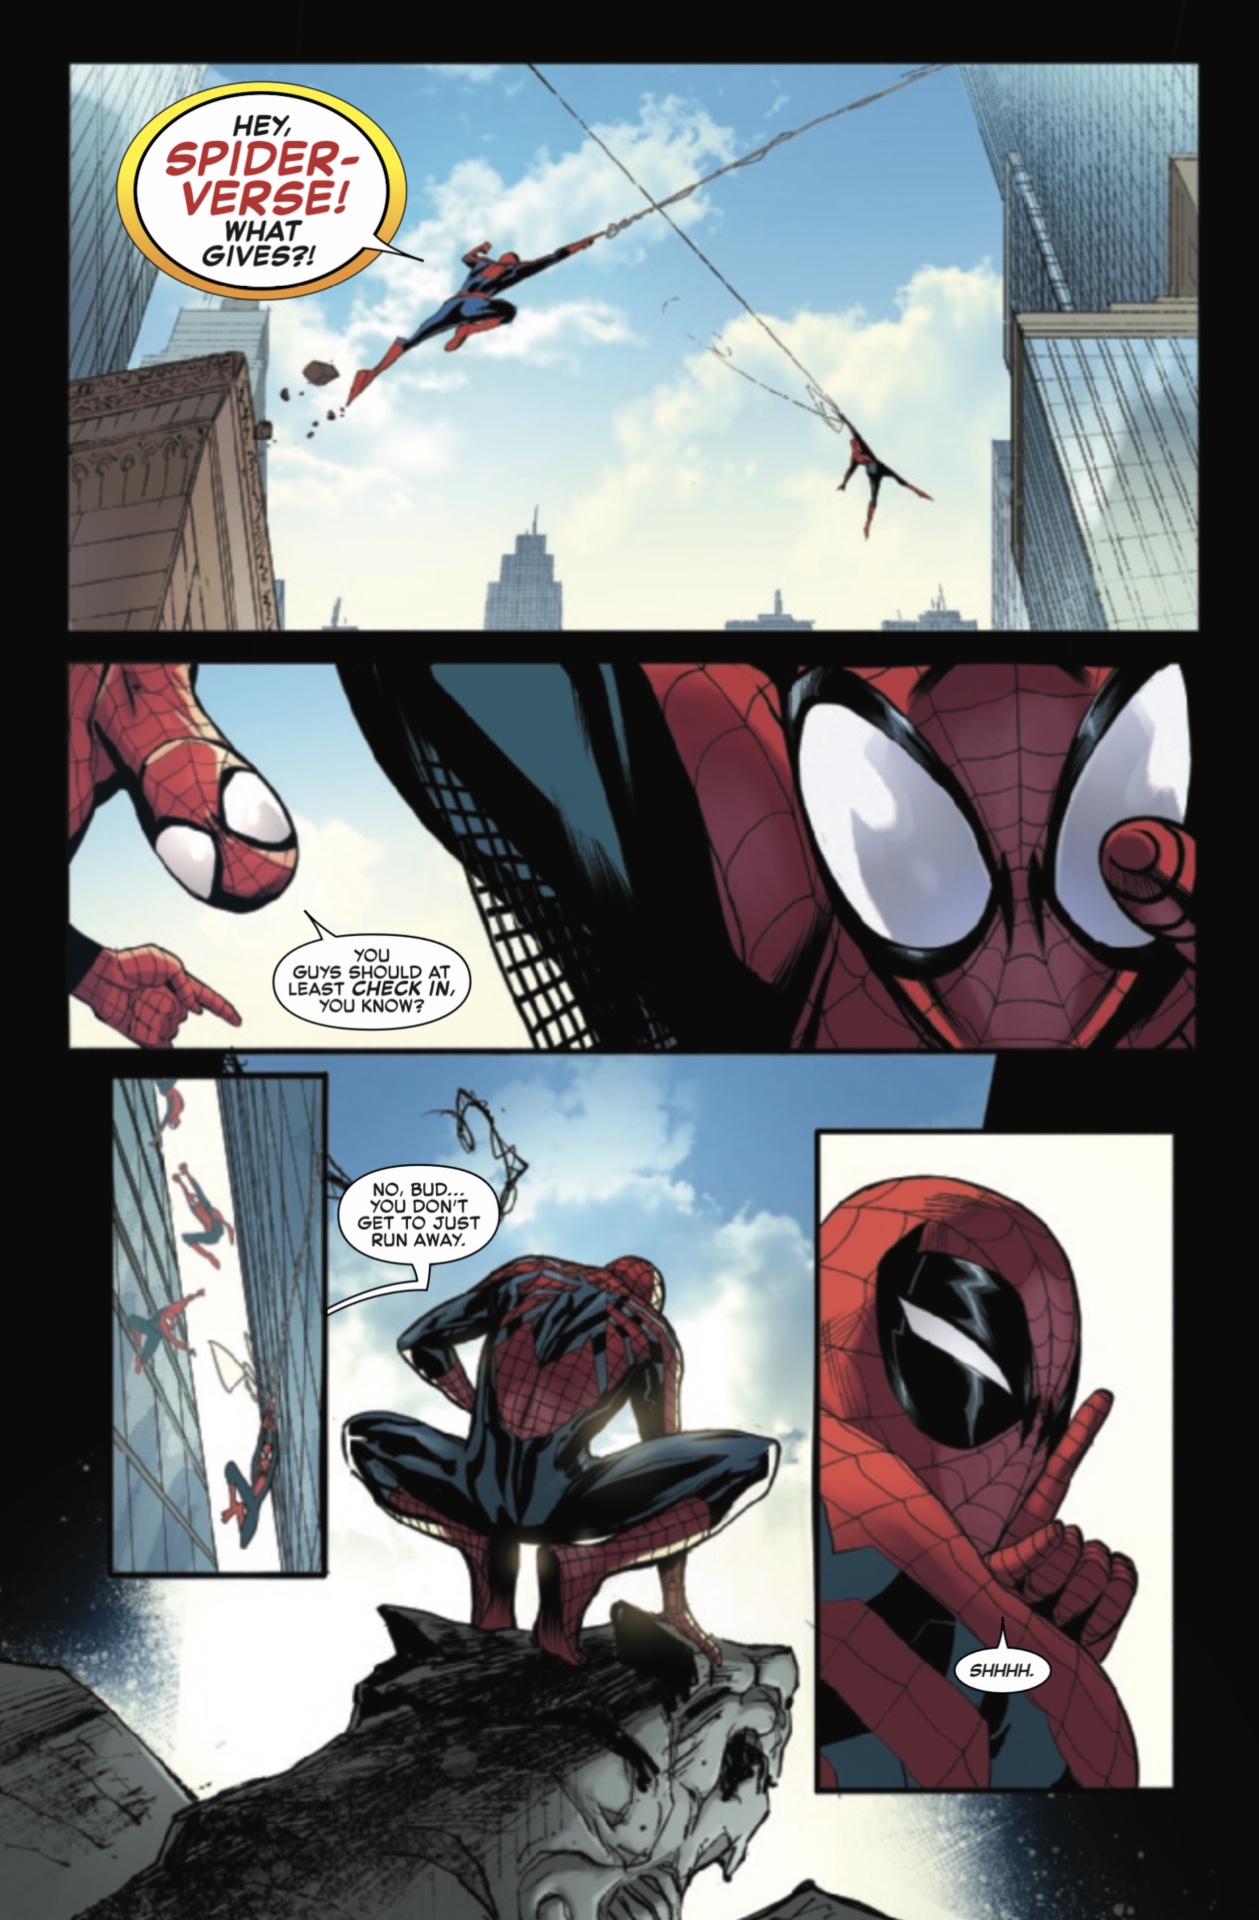 İnanılmaz Örümcek Adam'dan sayfa #75